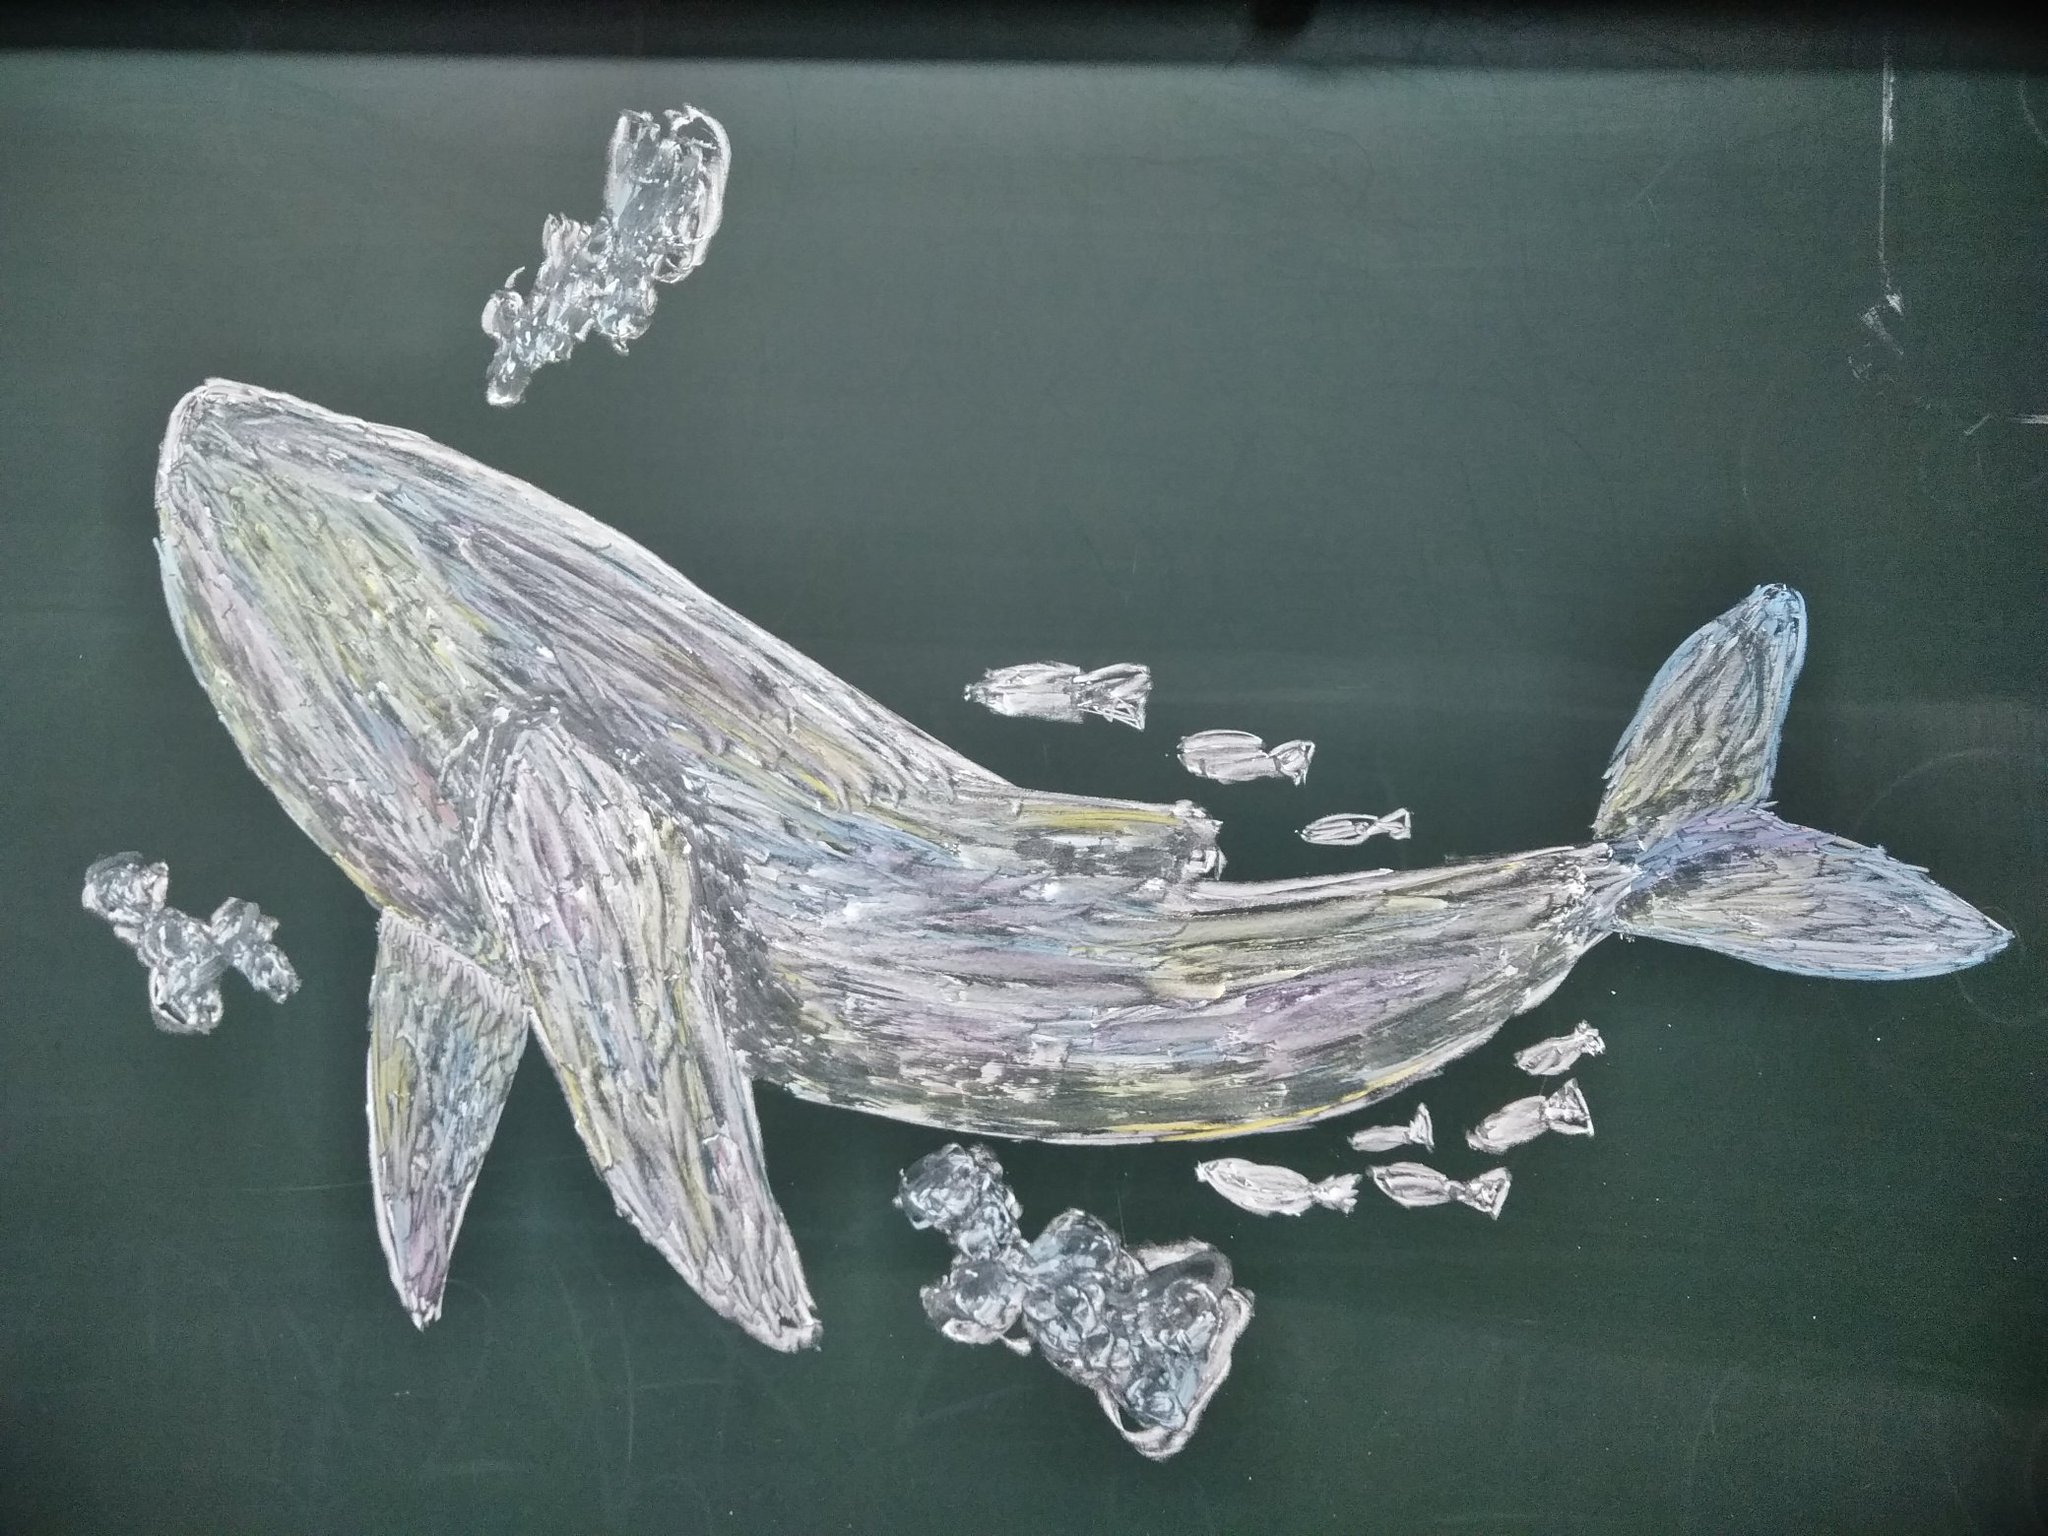 惰眠 黒板アートでクジラを描き殴った シルエットだけでも さまになるよなぁ 木曜イラスト から 木曜クリエイト に変更するらしい 黒板アート クジラ T Co Nonqvv6jaf Twitter